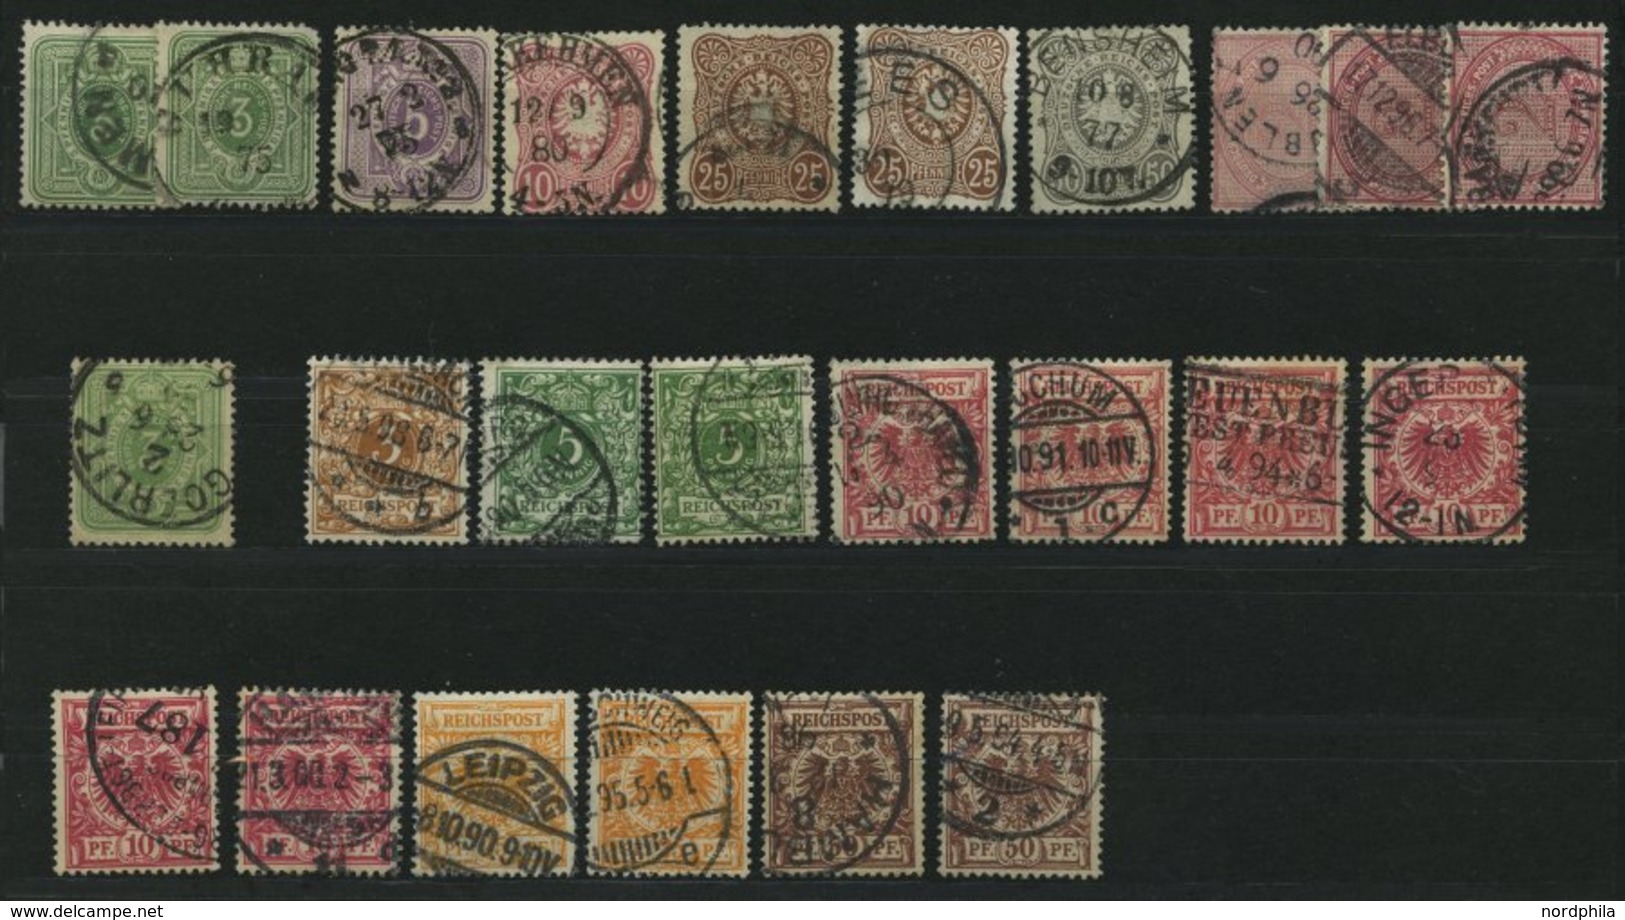 LOTS O, 1875-1899, 24 Verschiedene Kleinere Werte Pfennige, Pfennig Und Krone/Adler, Erhaltung Feinst/Pracht, Alle Geprü - Used Stamps